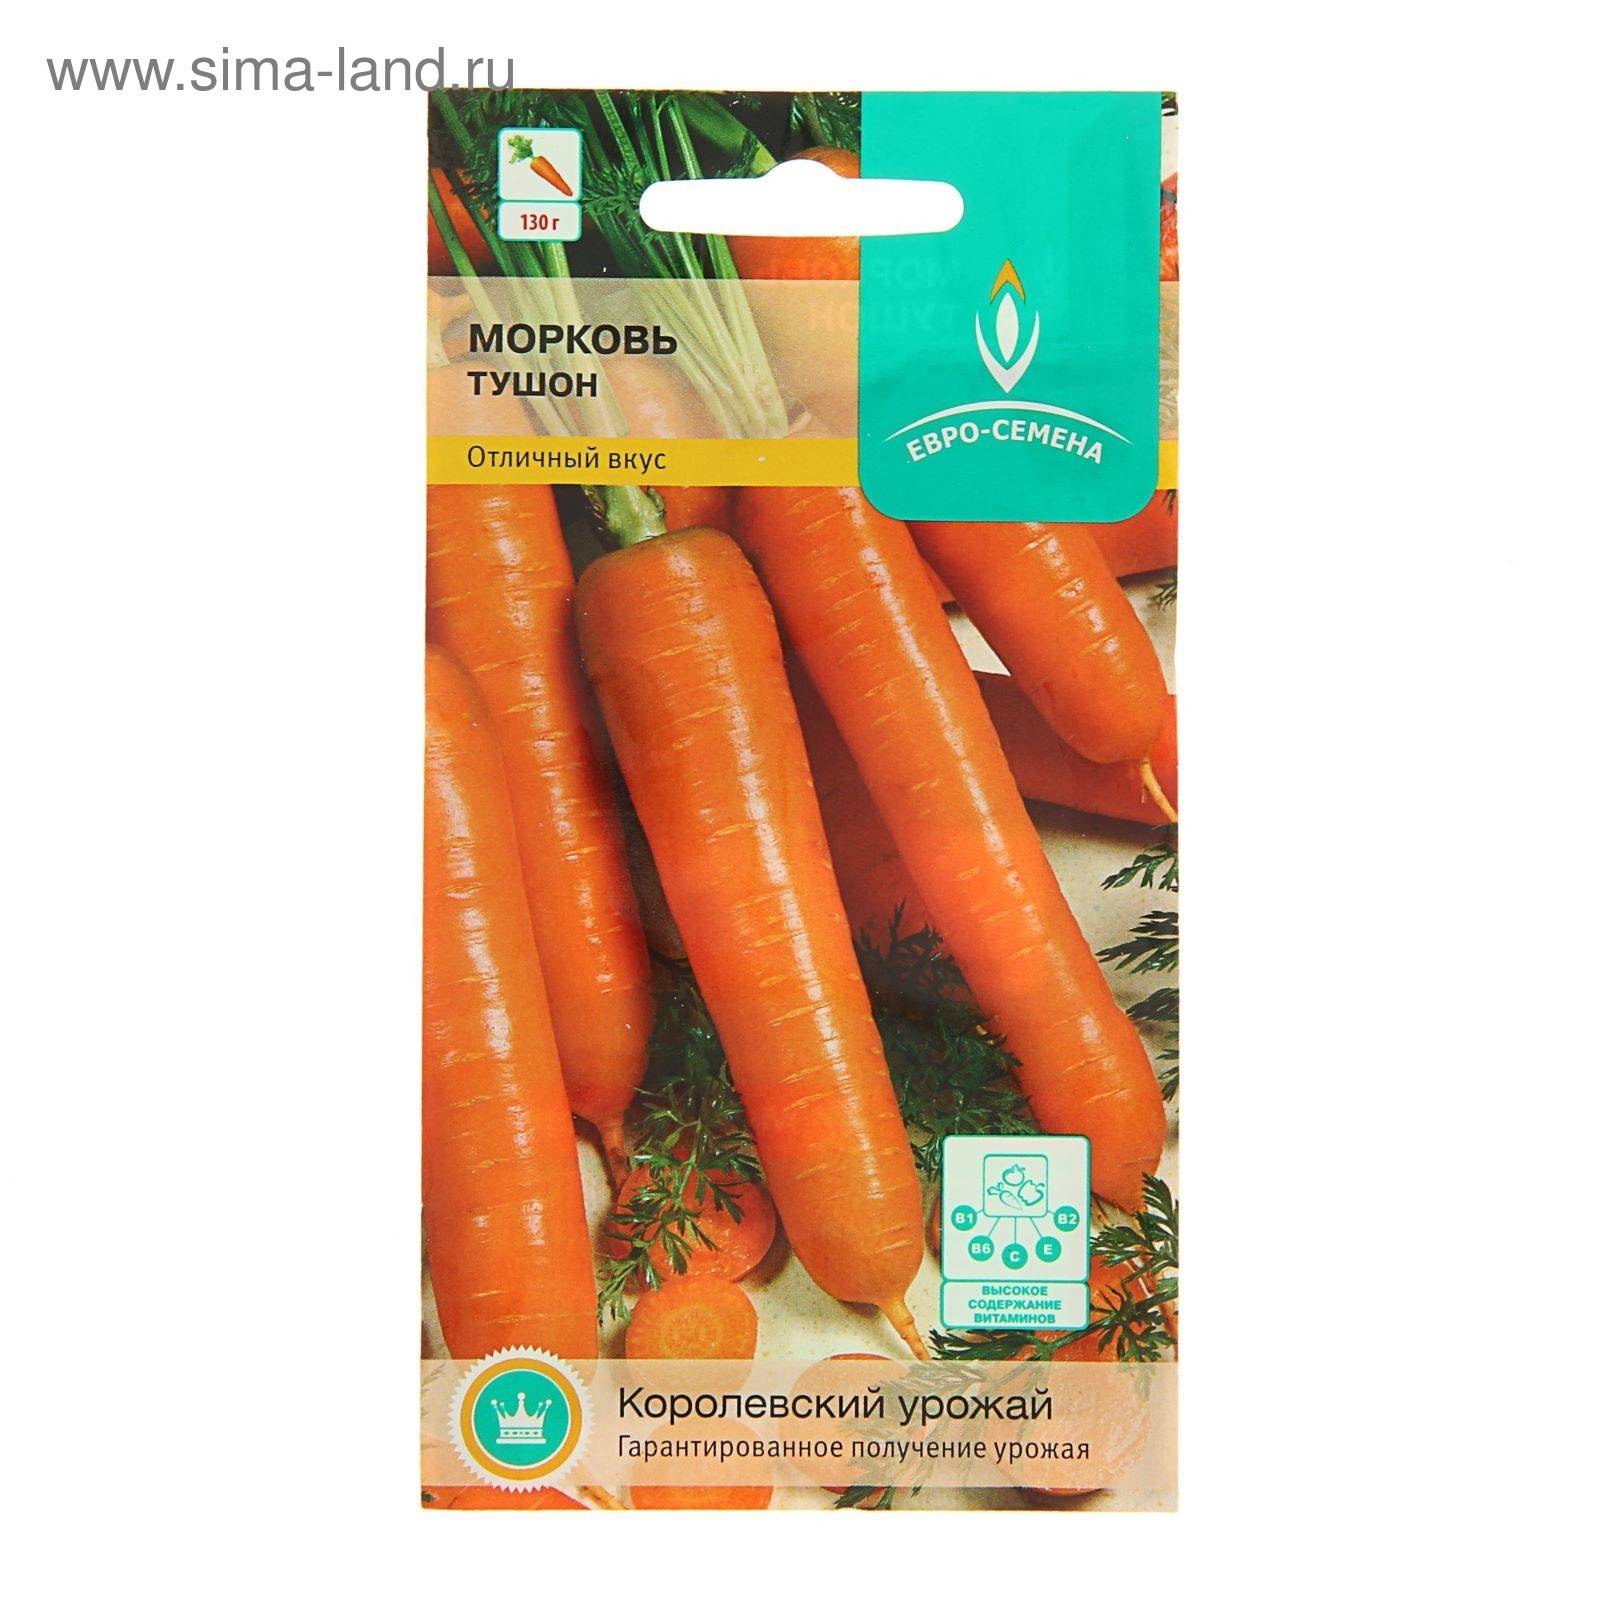 Раннеспелый сорт моркови тушон. описание, отличия, выращивание